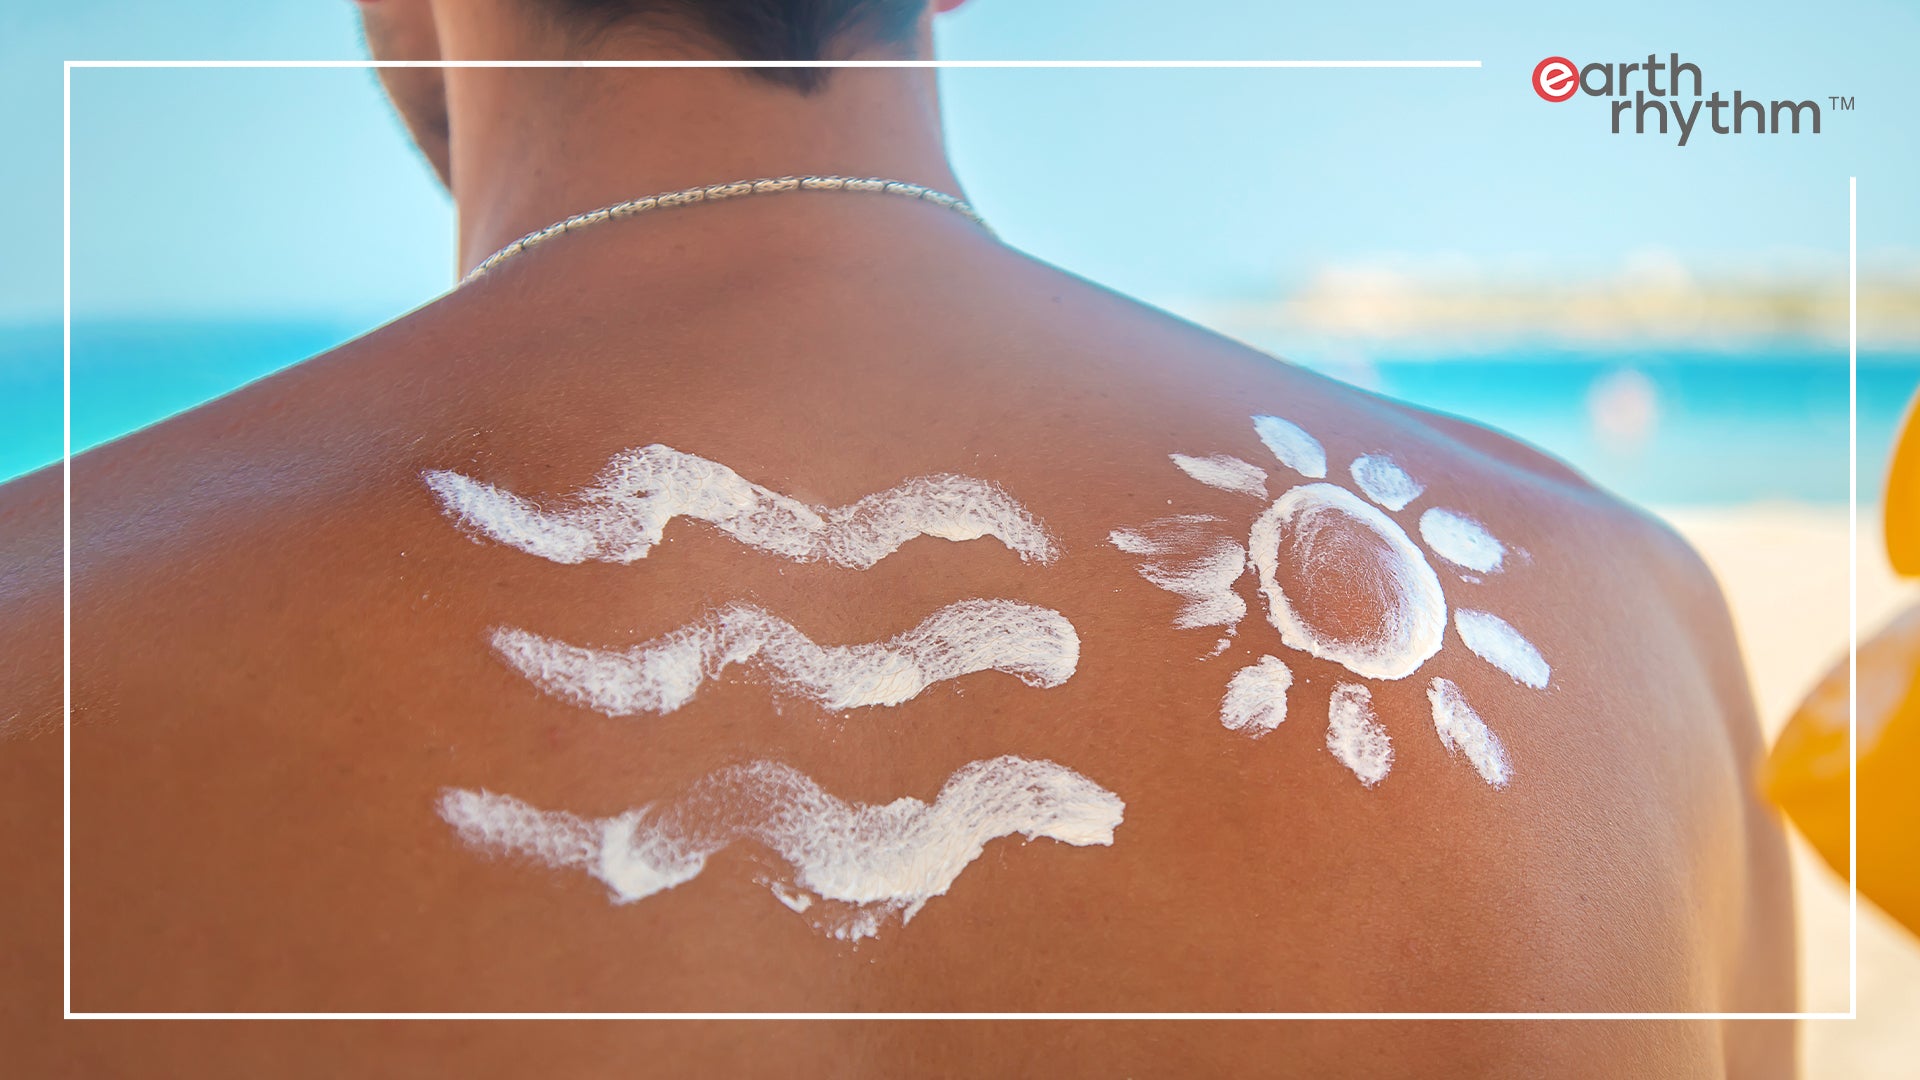 Make Your Skin Sun-Ready with Sunscreen